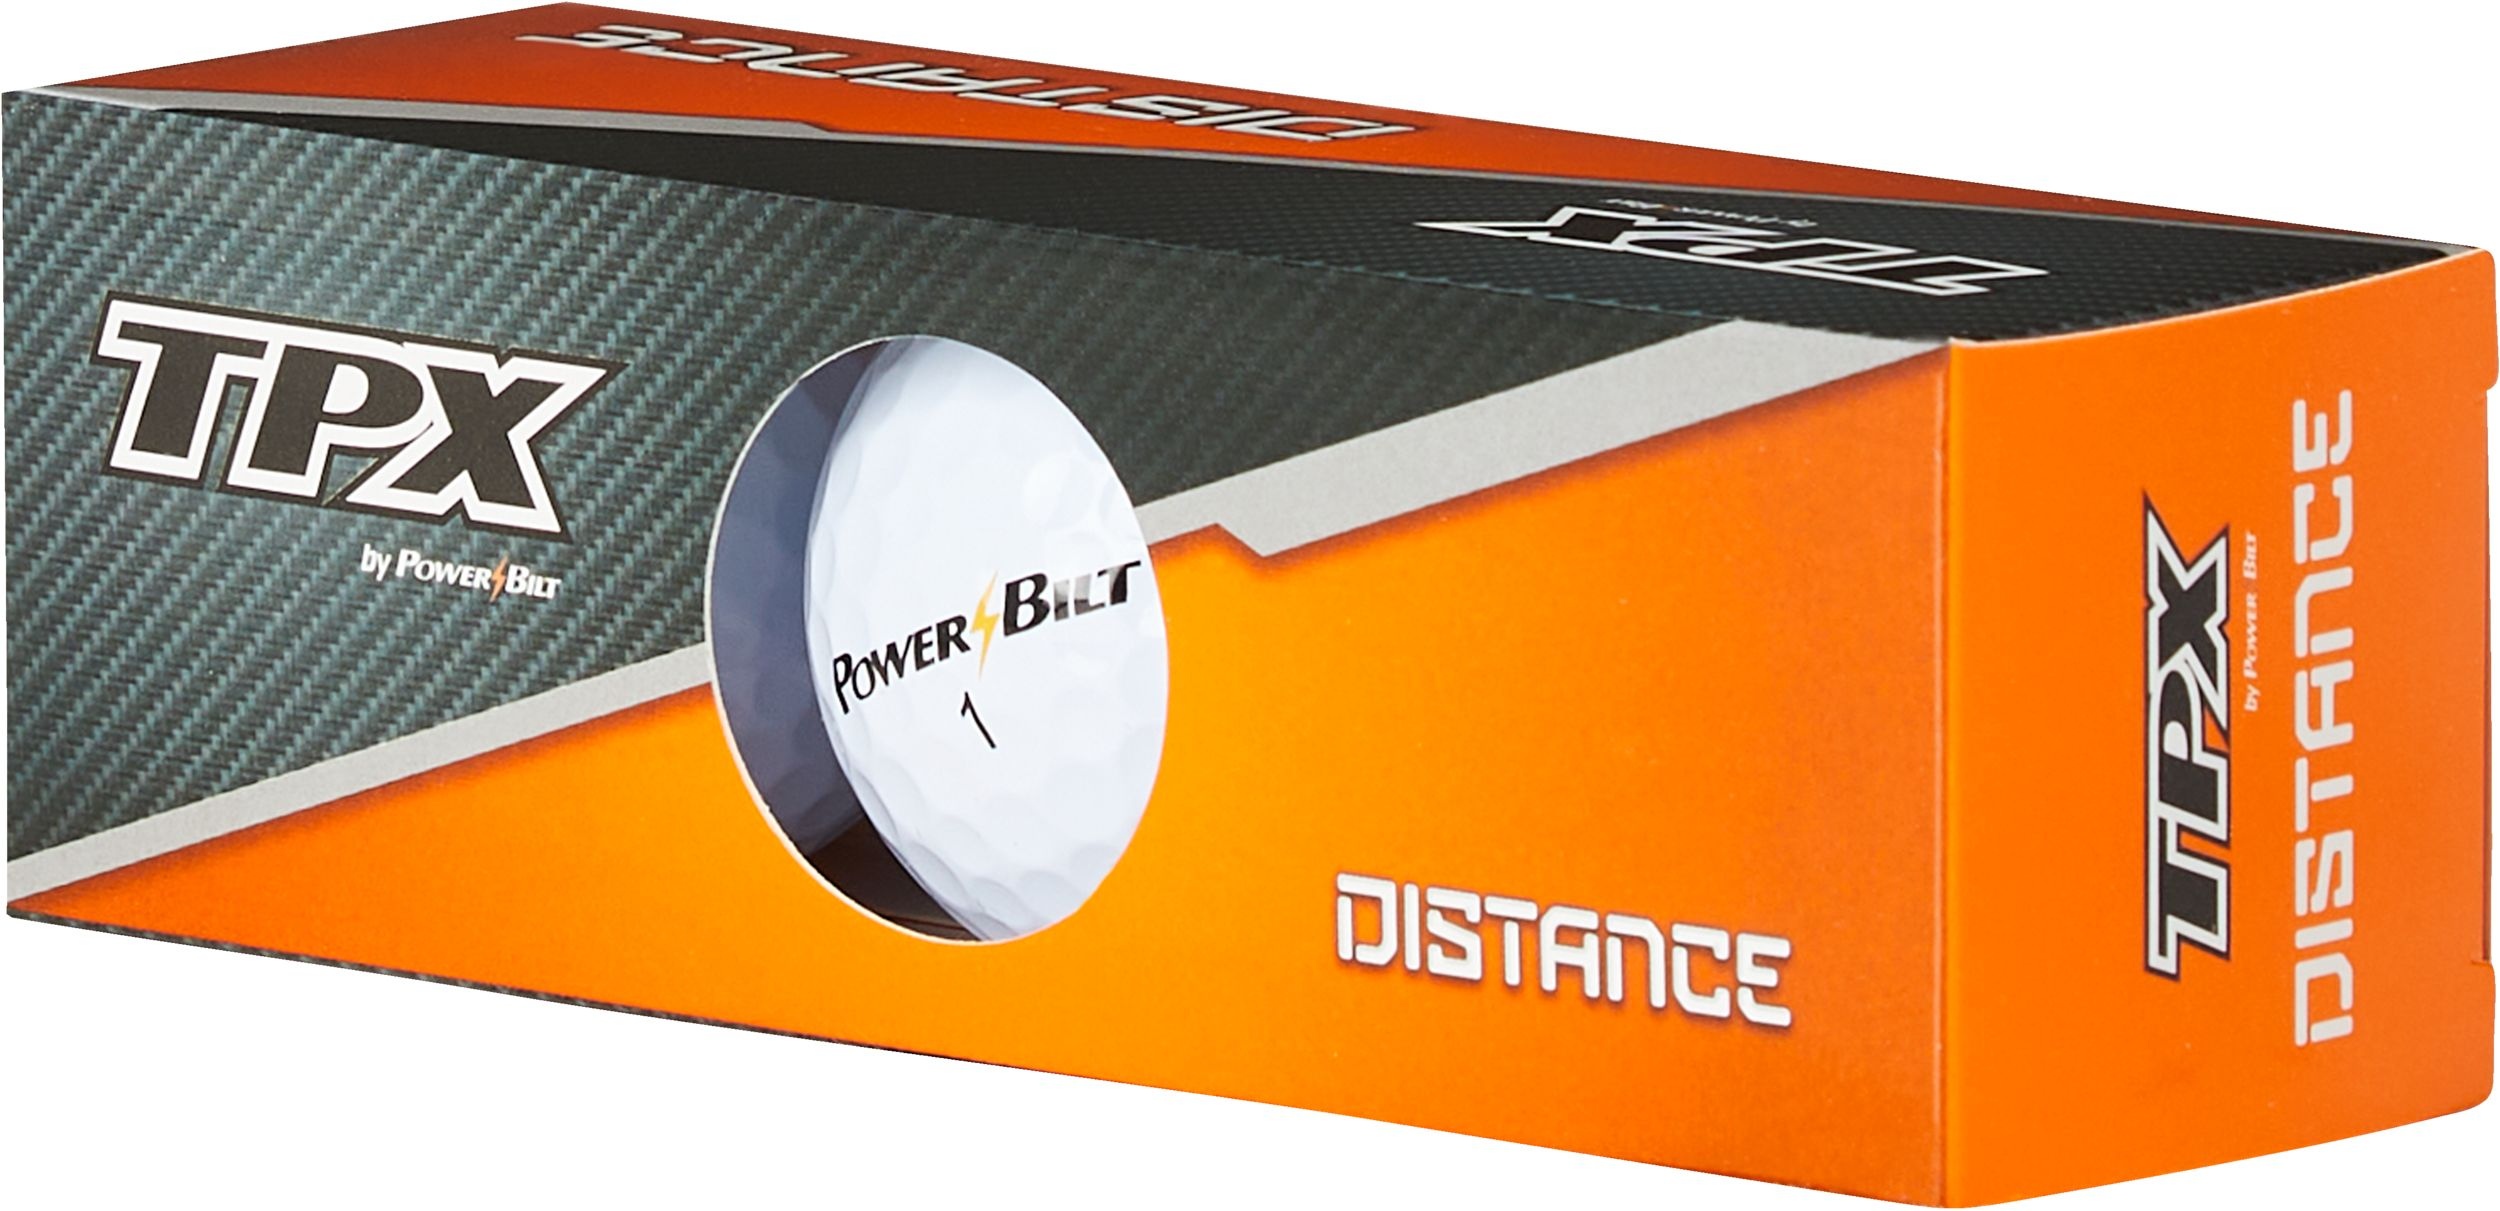 powerbilt tps tour distance golf balls review